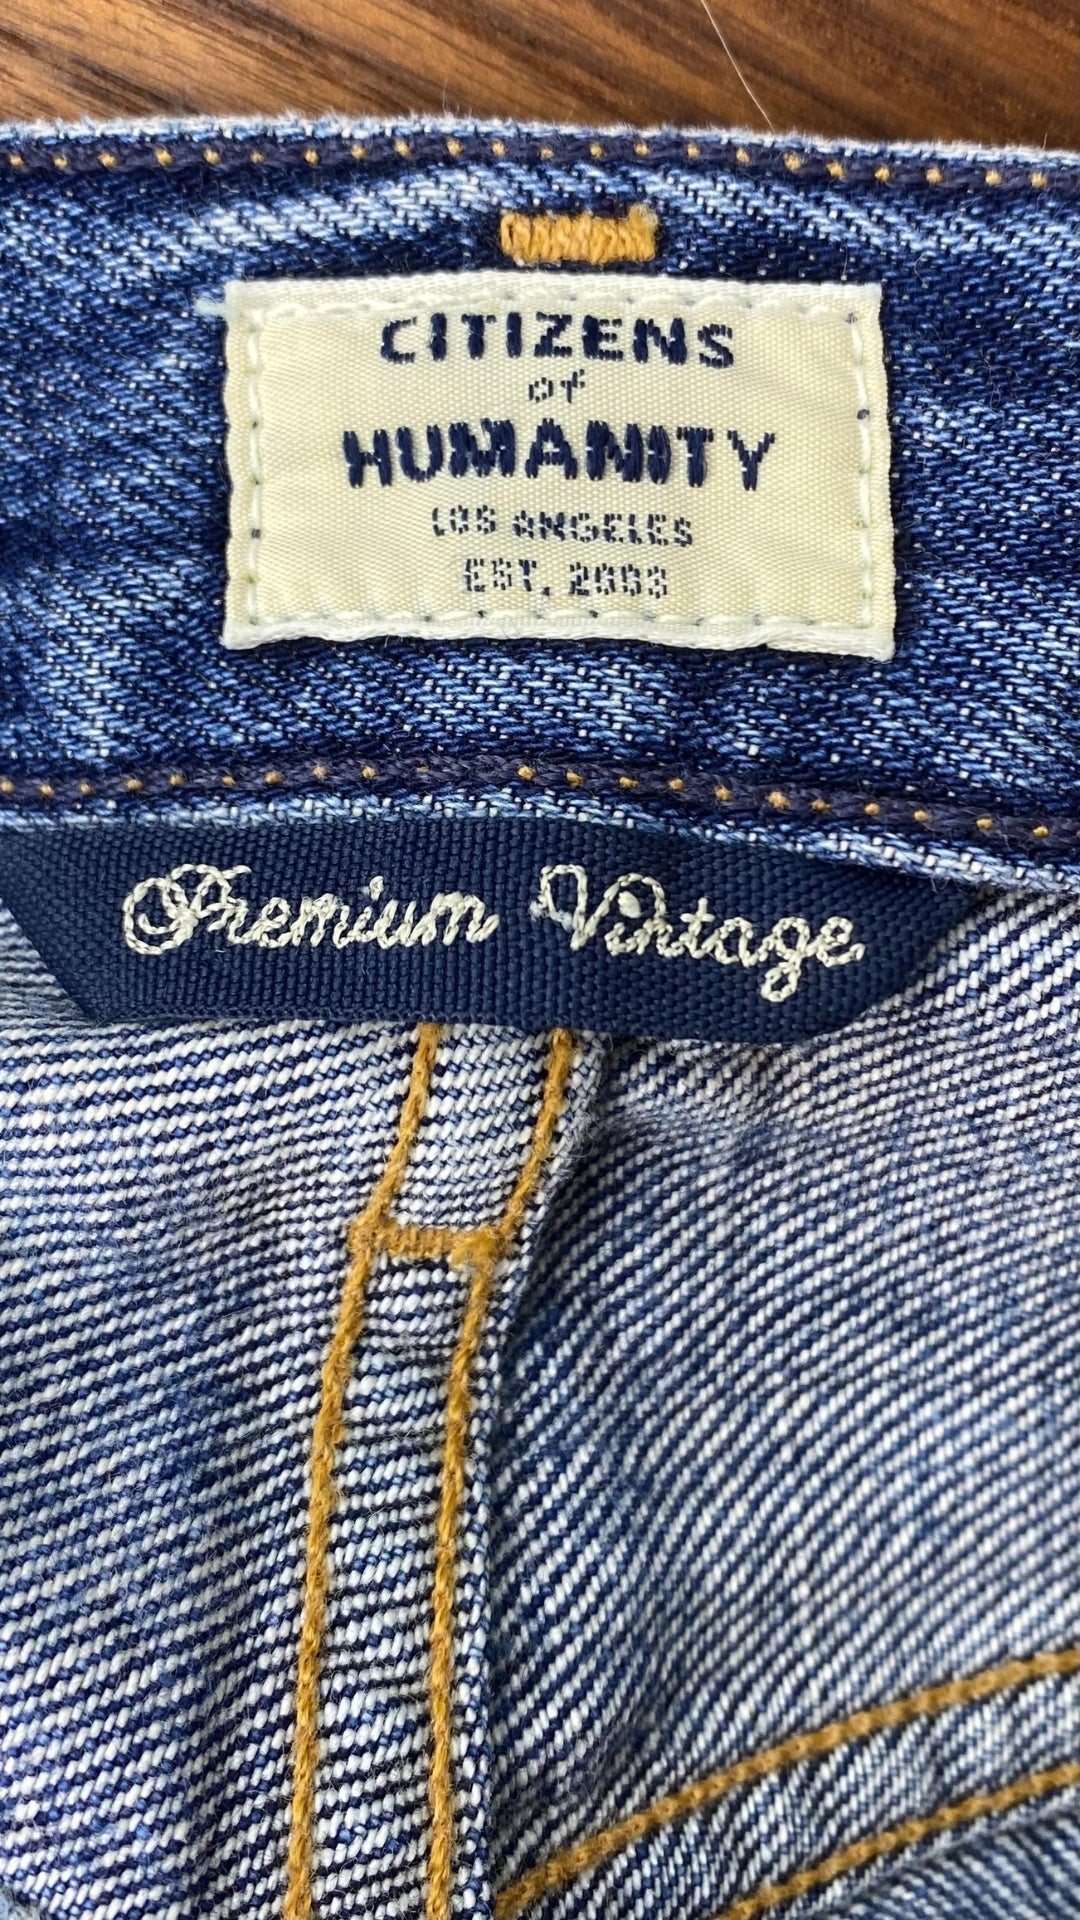 Jeans ajusté taille haute Citizens of Humanity, taille 23. Vue de ll'étiquette de la marque.